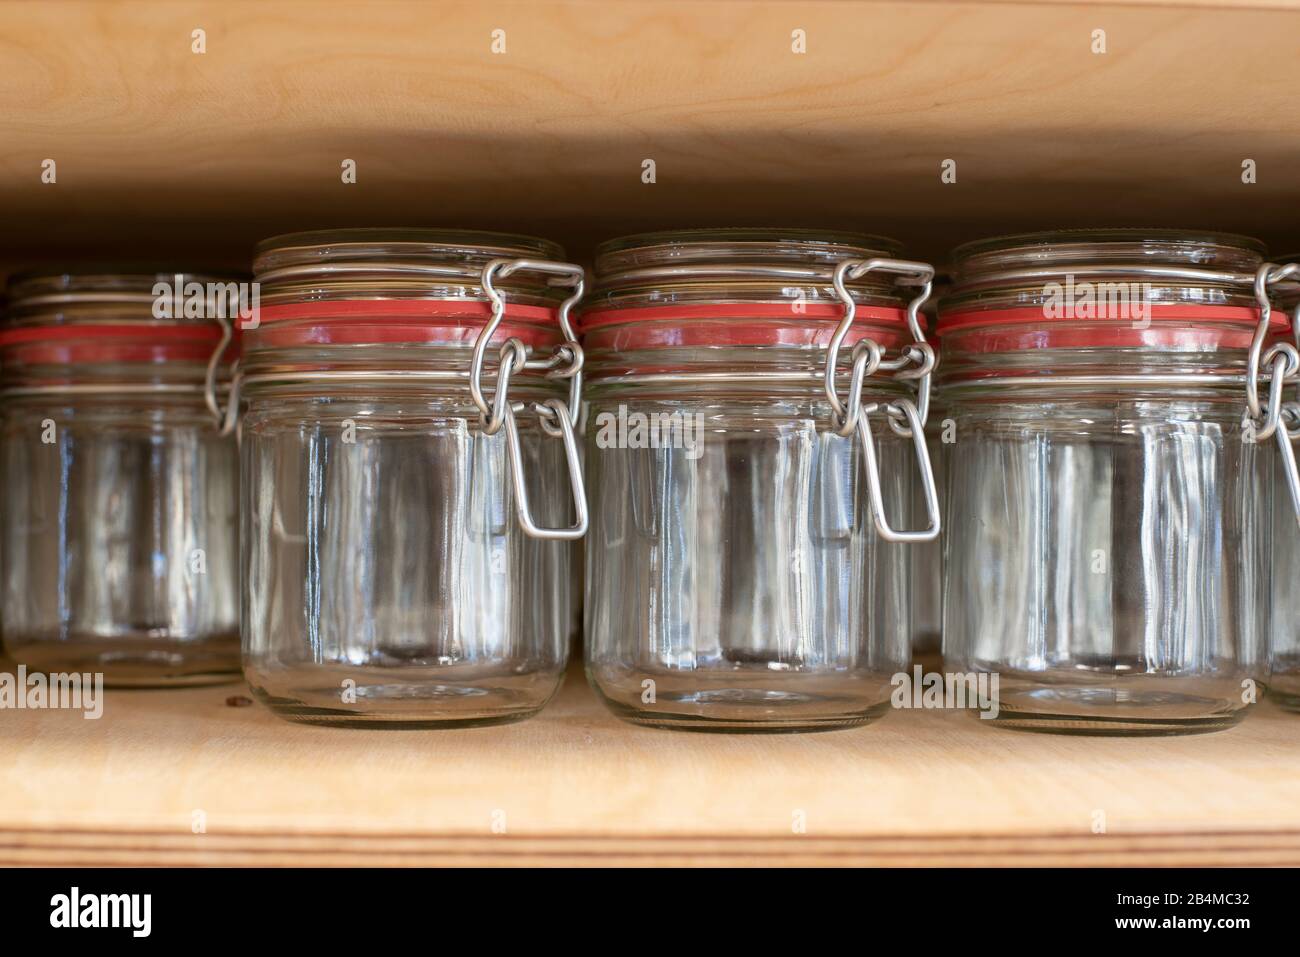 Blick auf Gläser zum Abfüllen von Lebensmitteln in einem Unverpacktladen Stock Photo